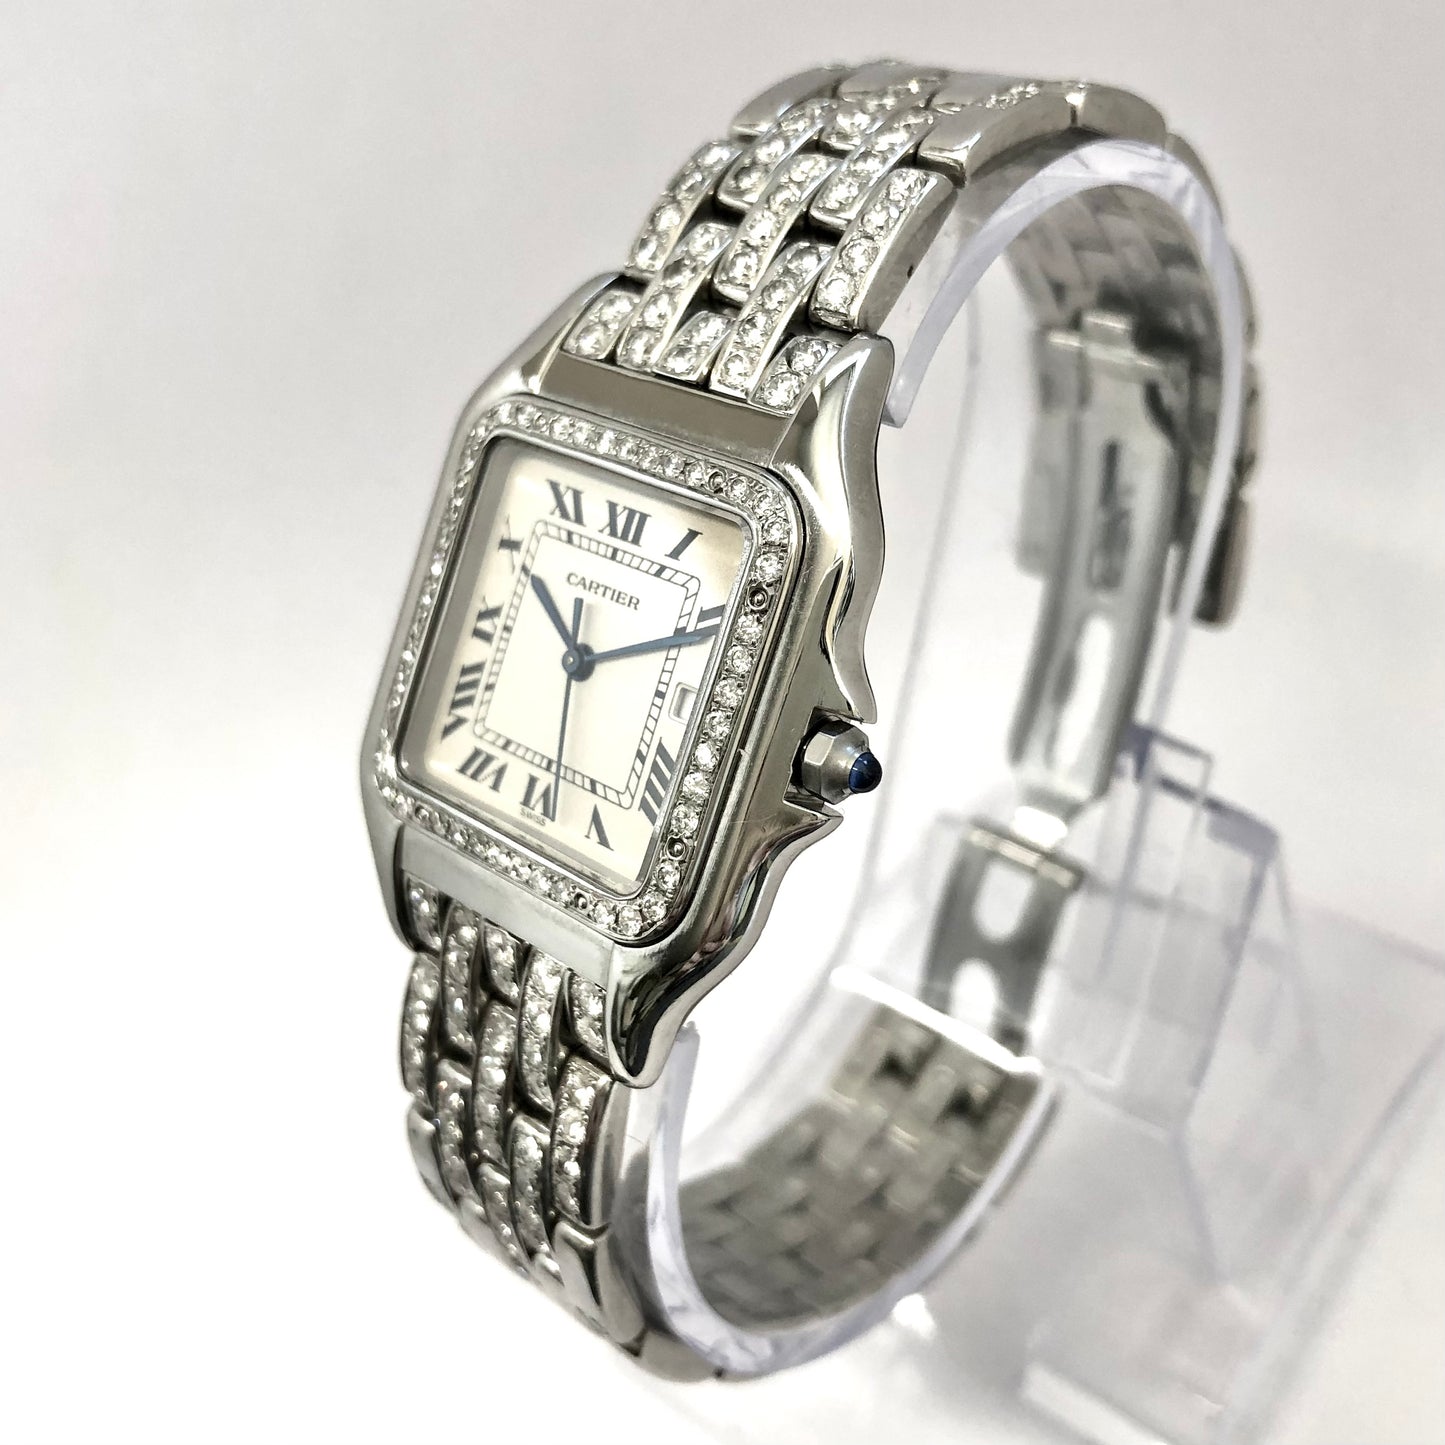 CARTIER PANTHÉRE Quartz 29mm Steel 3.42TCW Diamond Watch